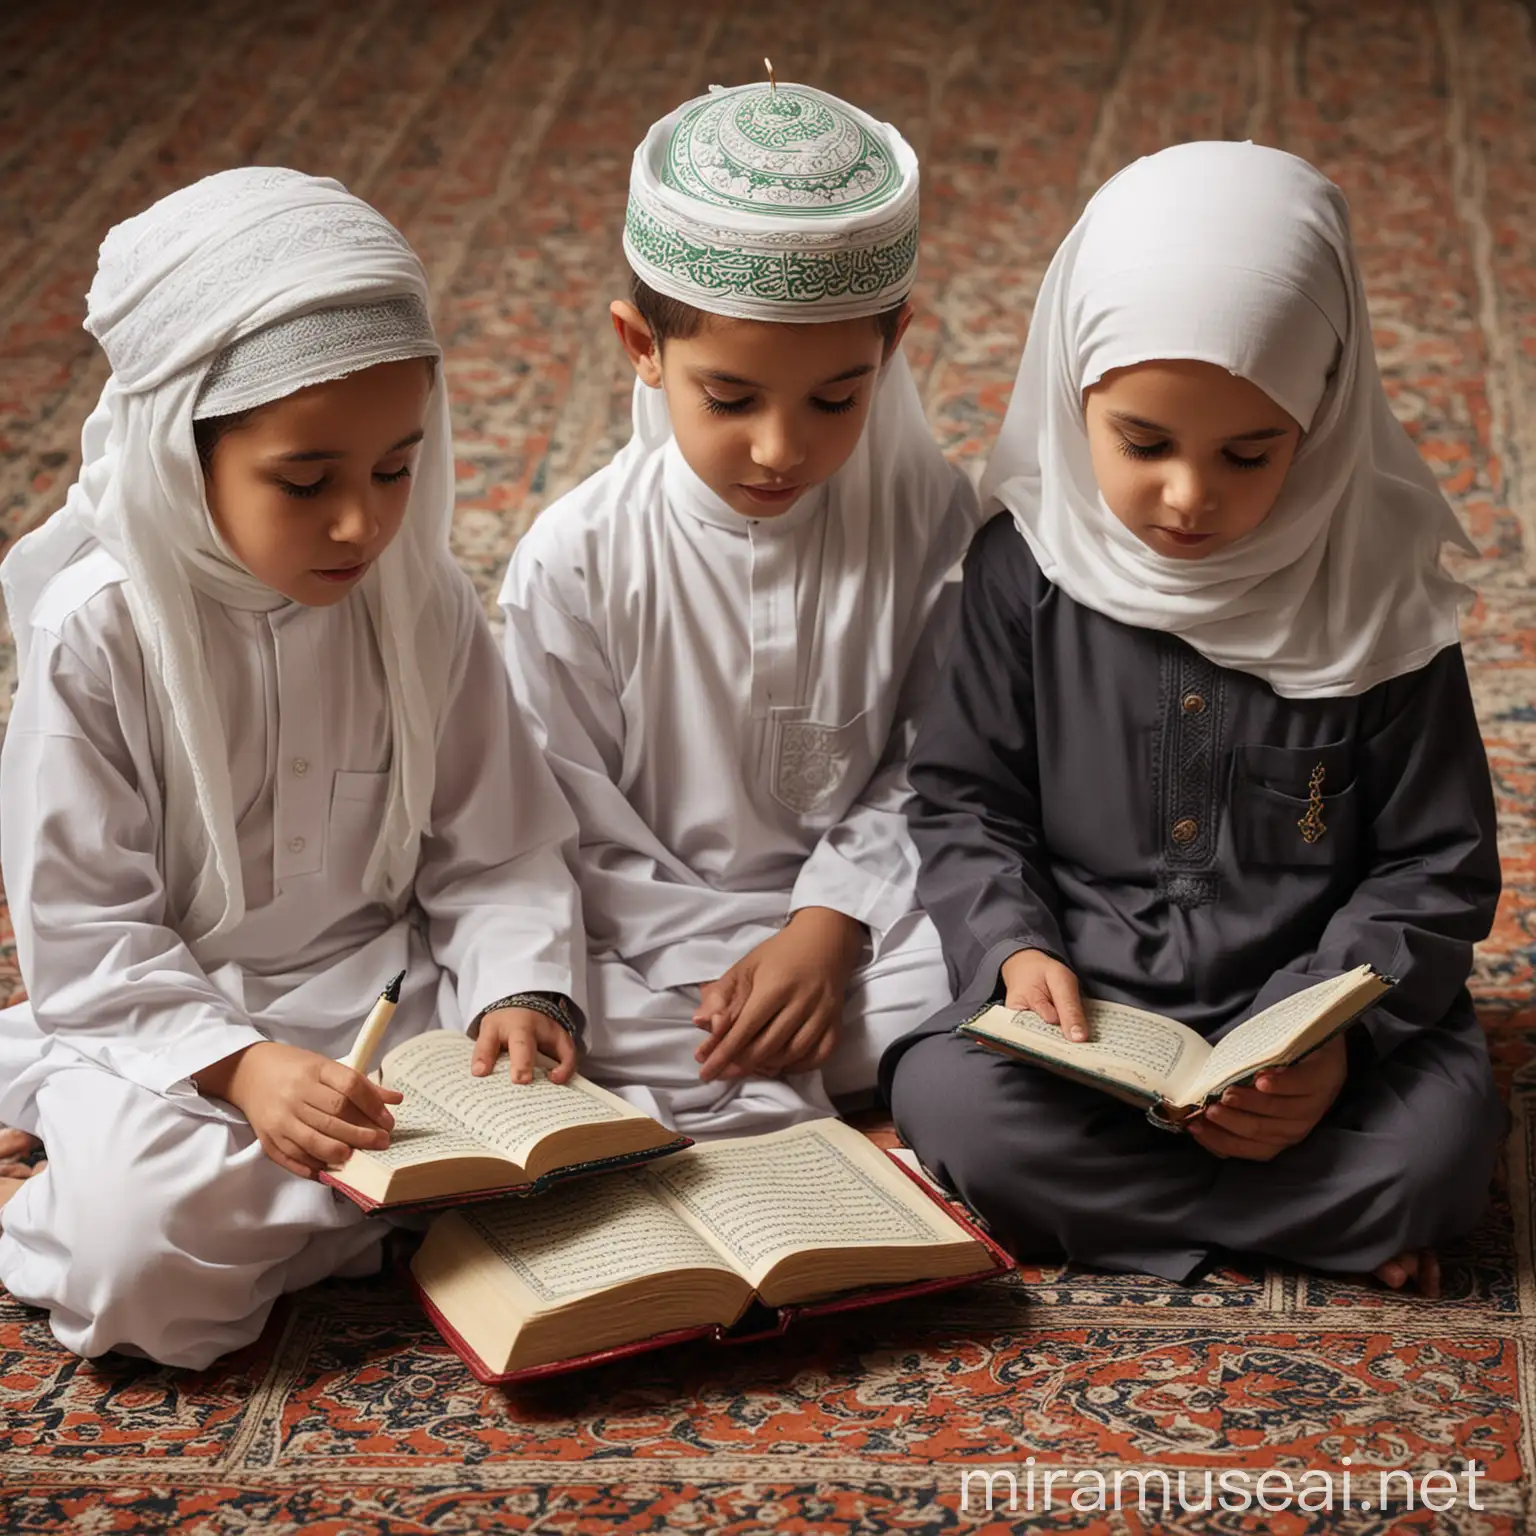 Muslim Children Reading Quran Together in Devotion